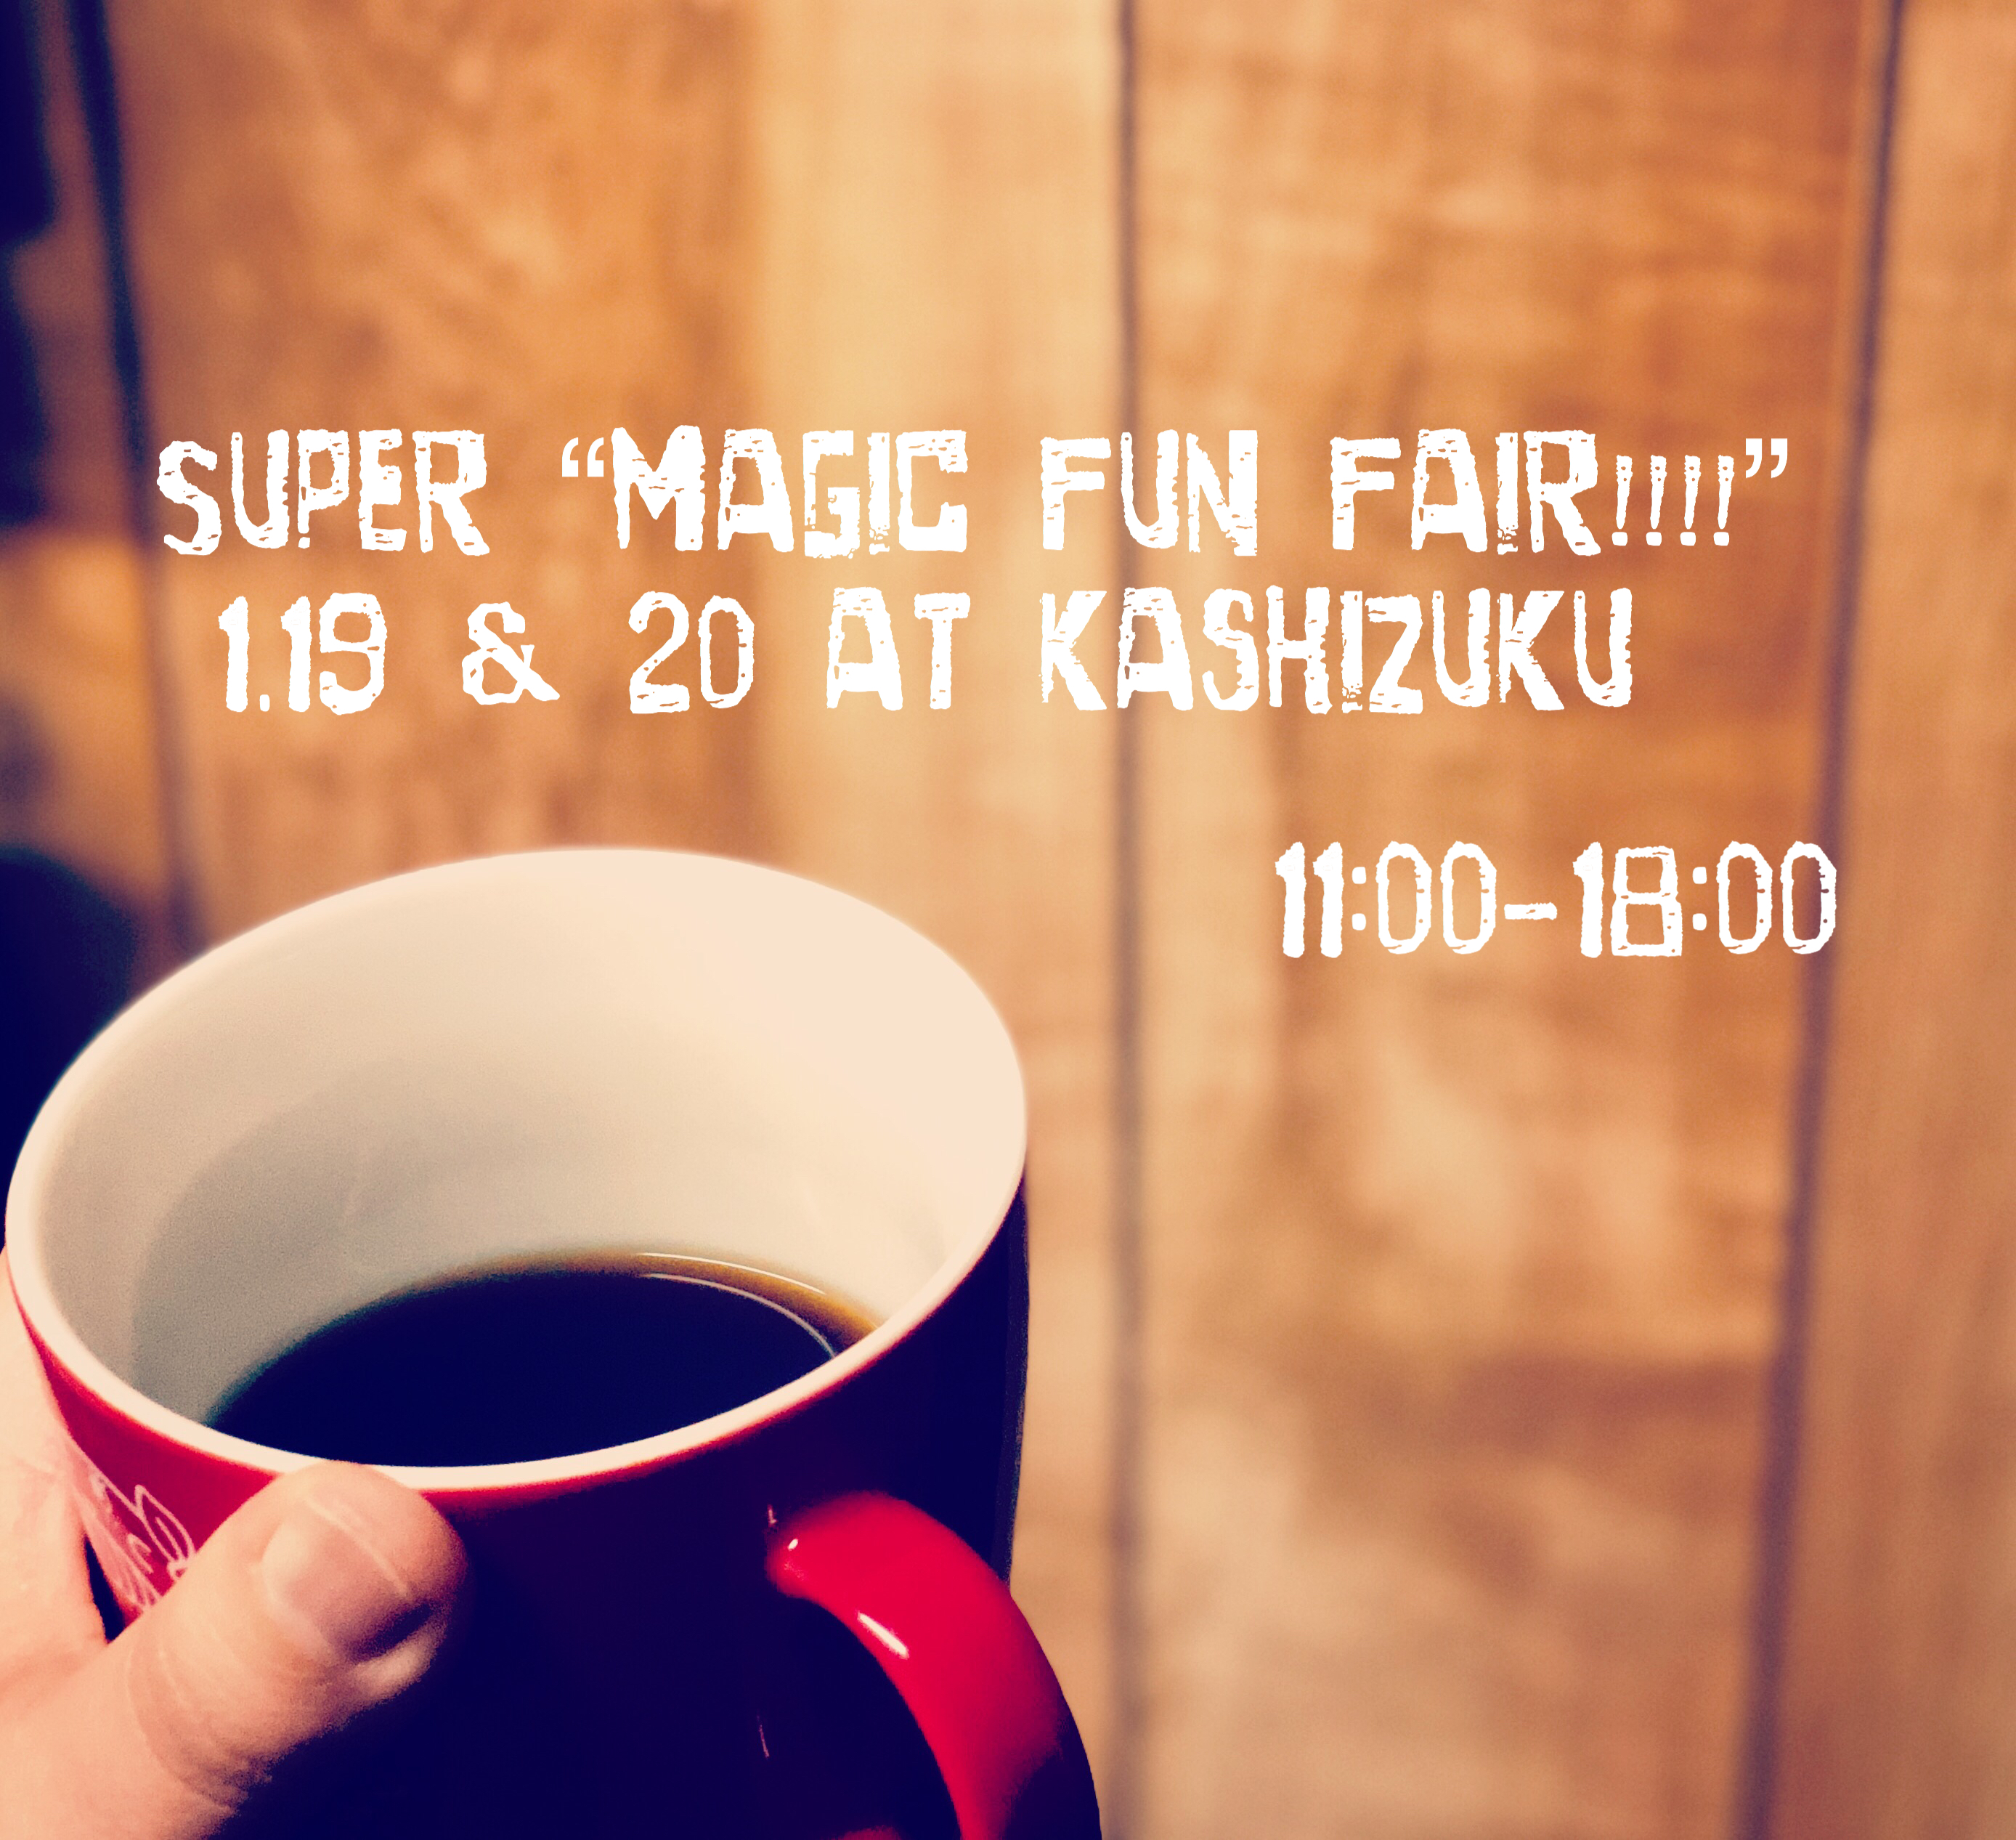 SUPER "magic fun fair!!!!" VOL.9